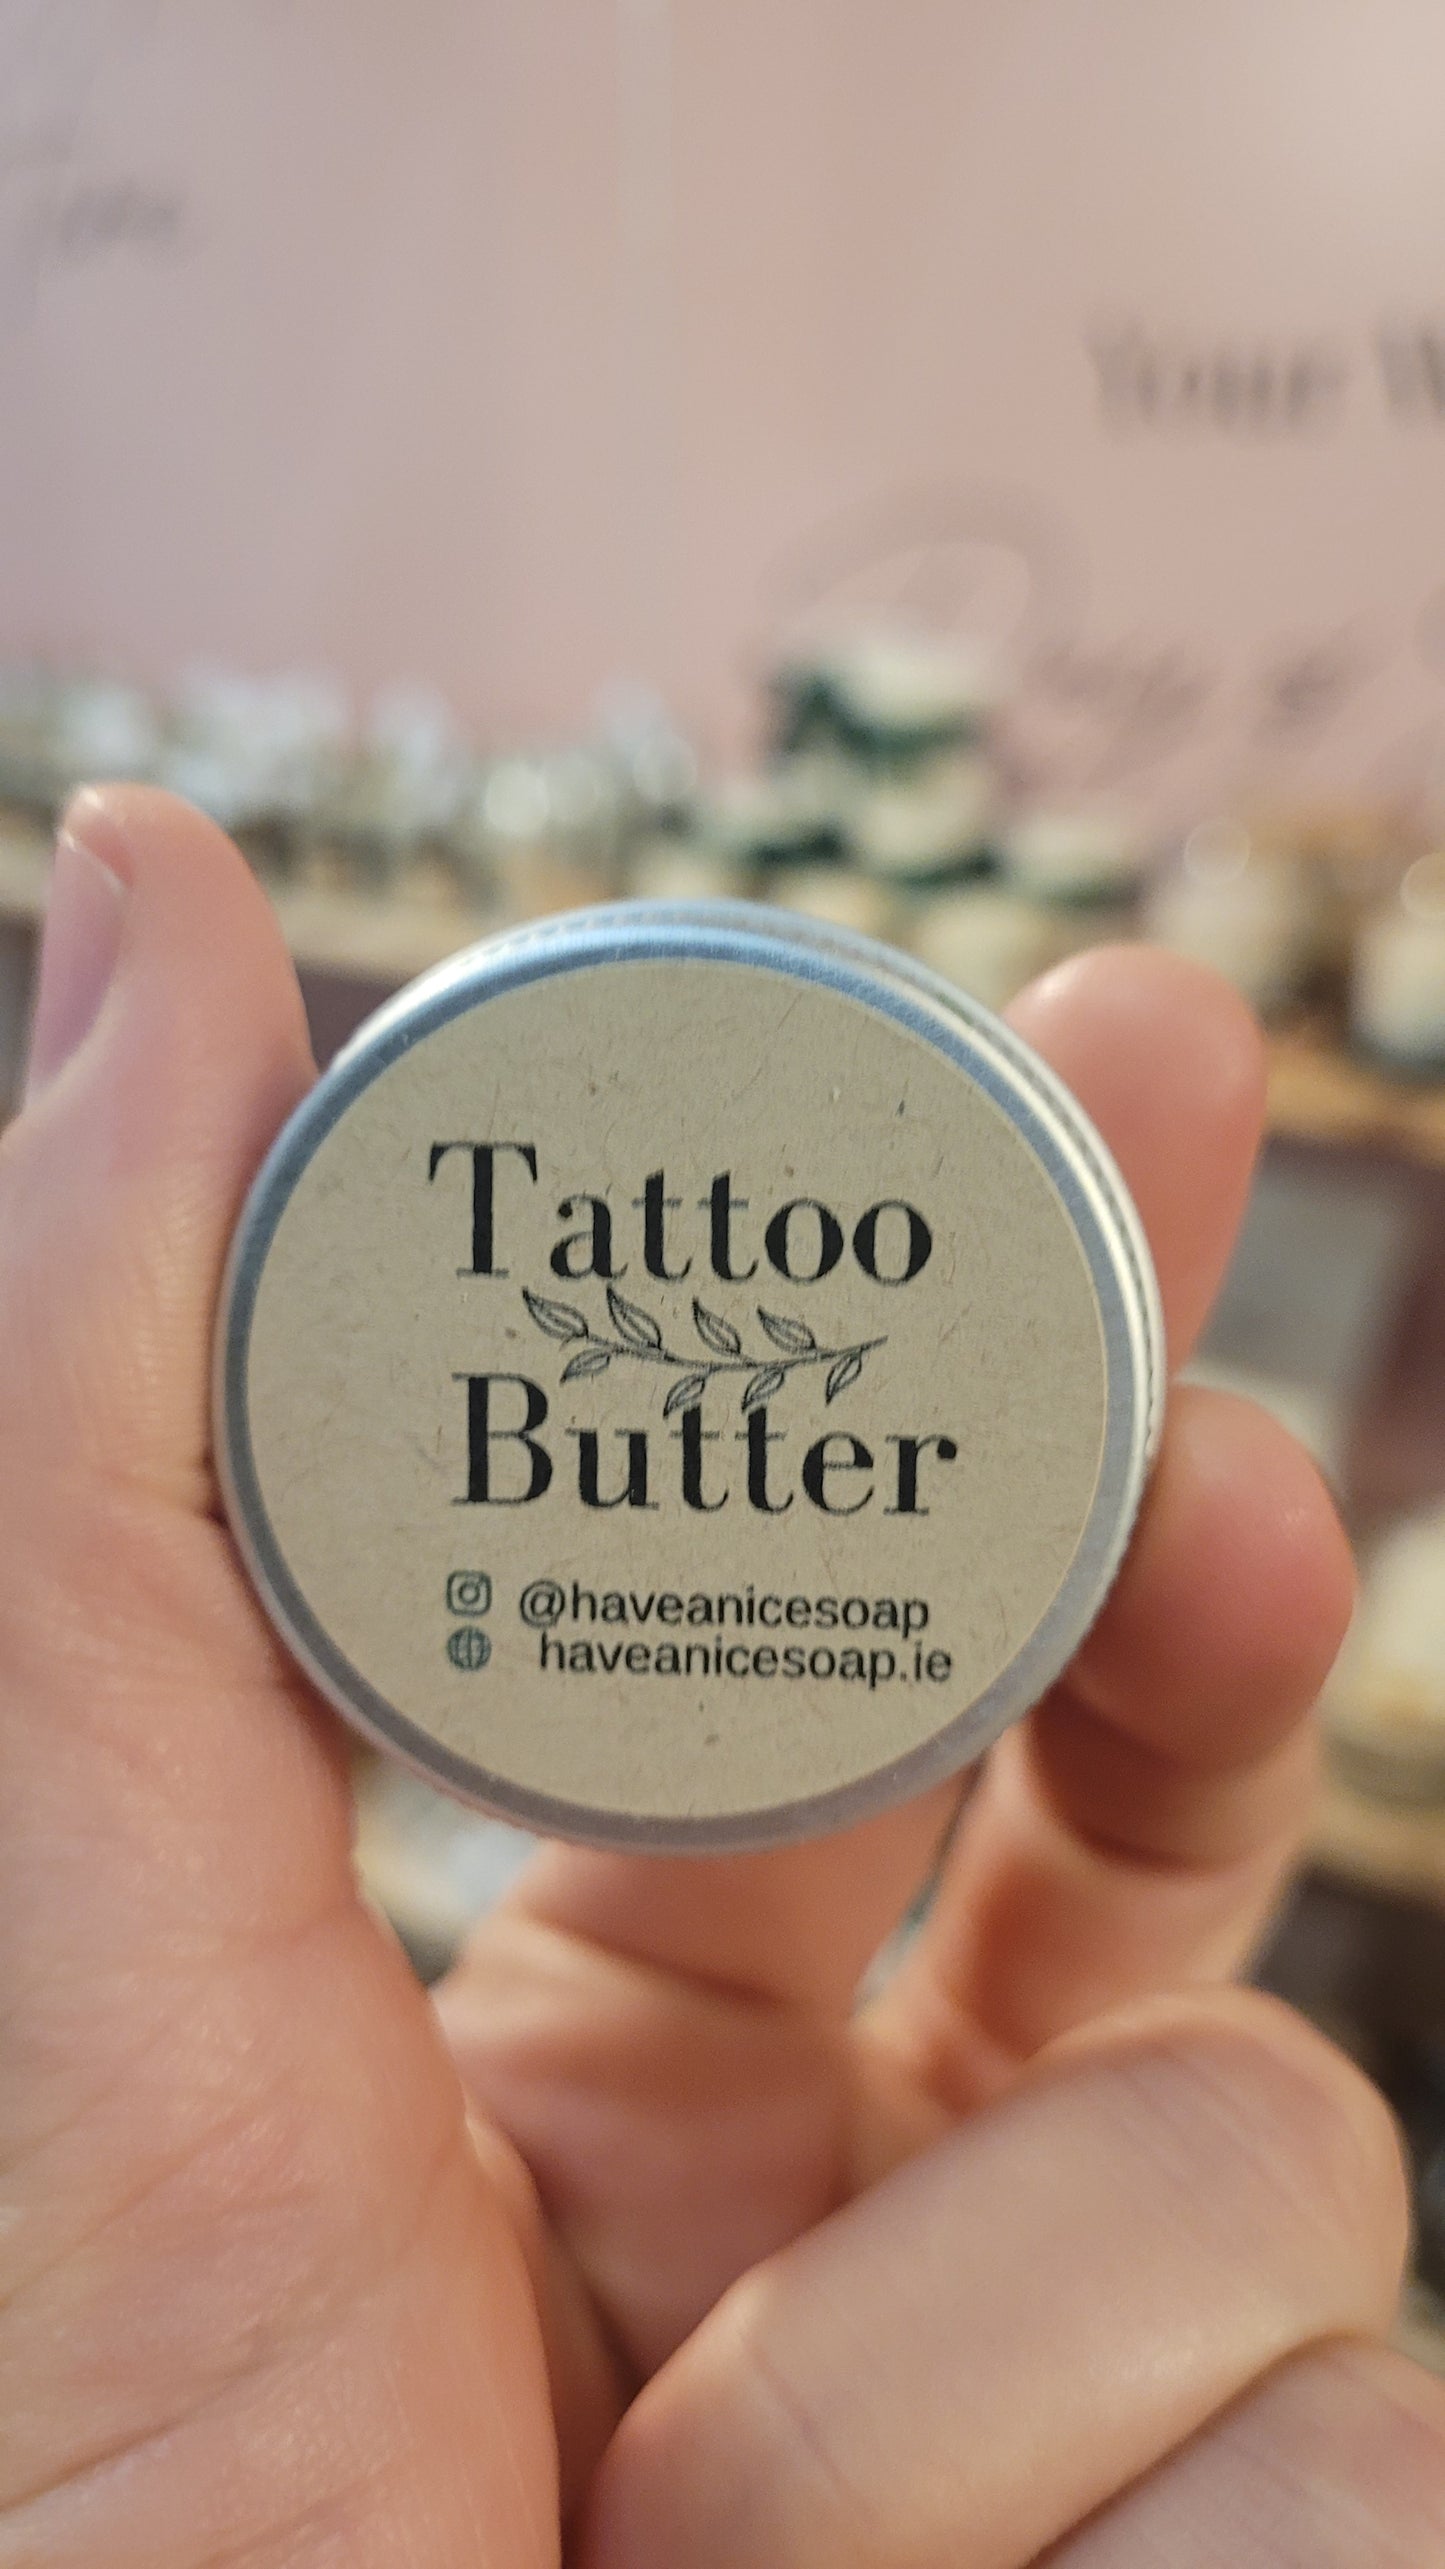 Tattoo butter